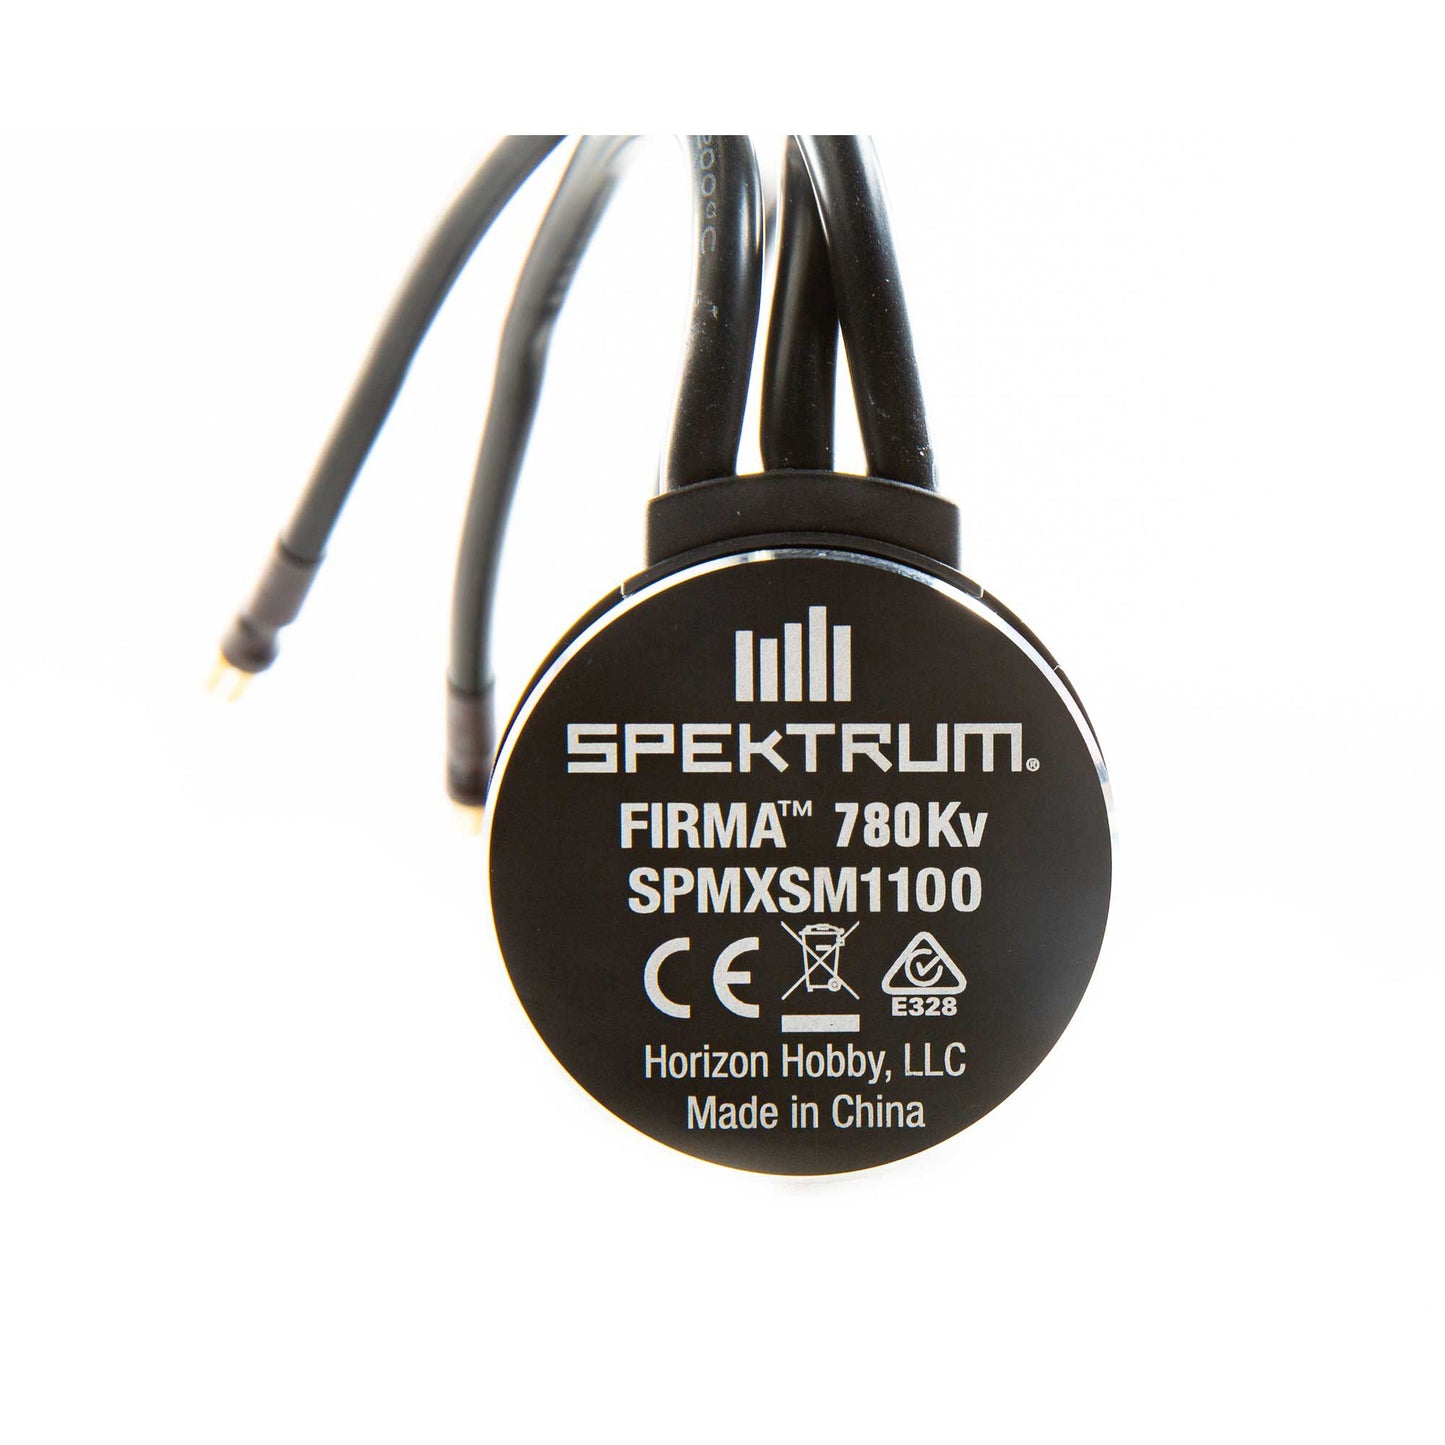 Spektrum Firma SPMXSM1100  Brushless Motor, 780Kv,